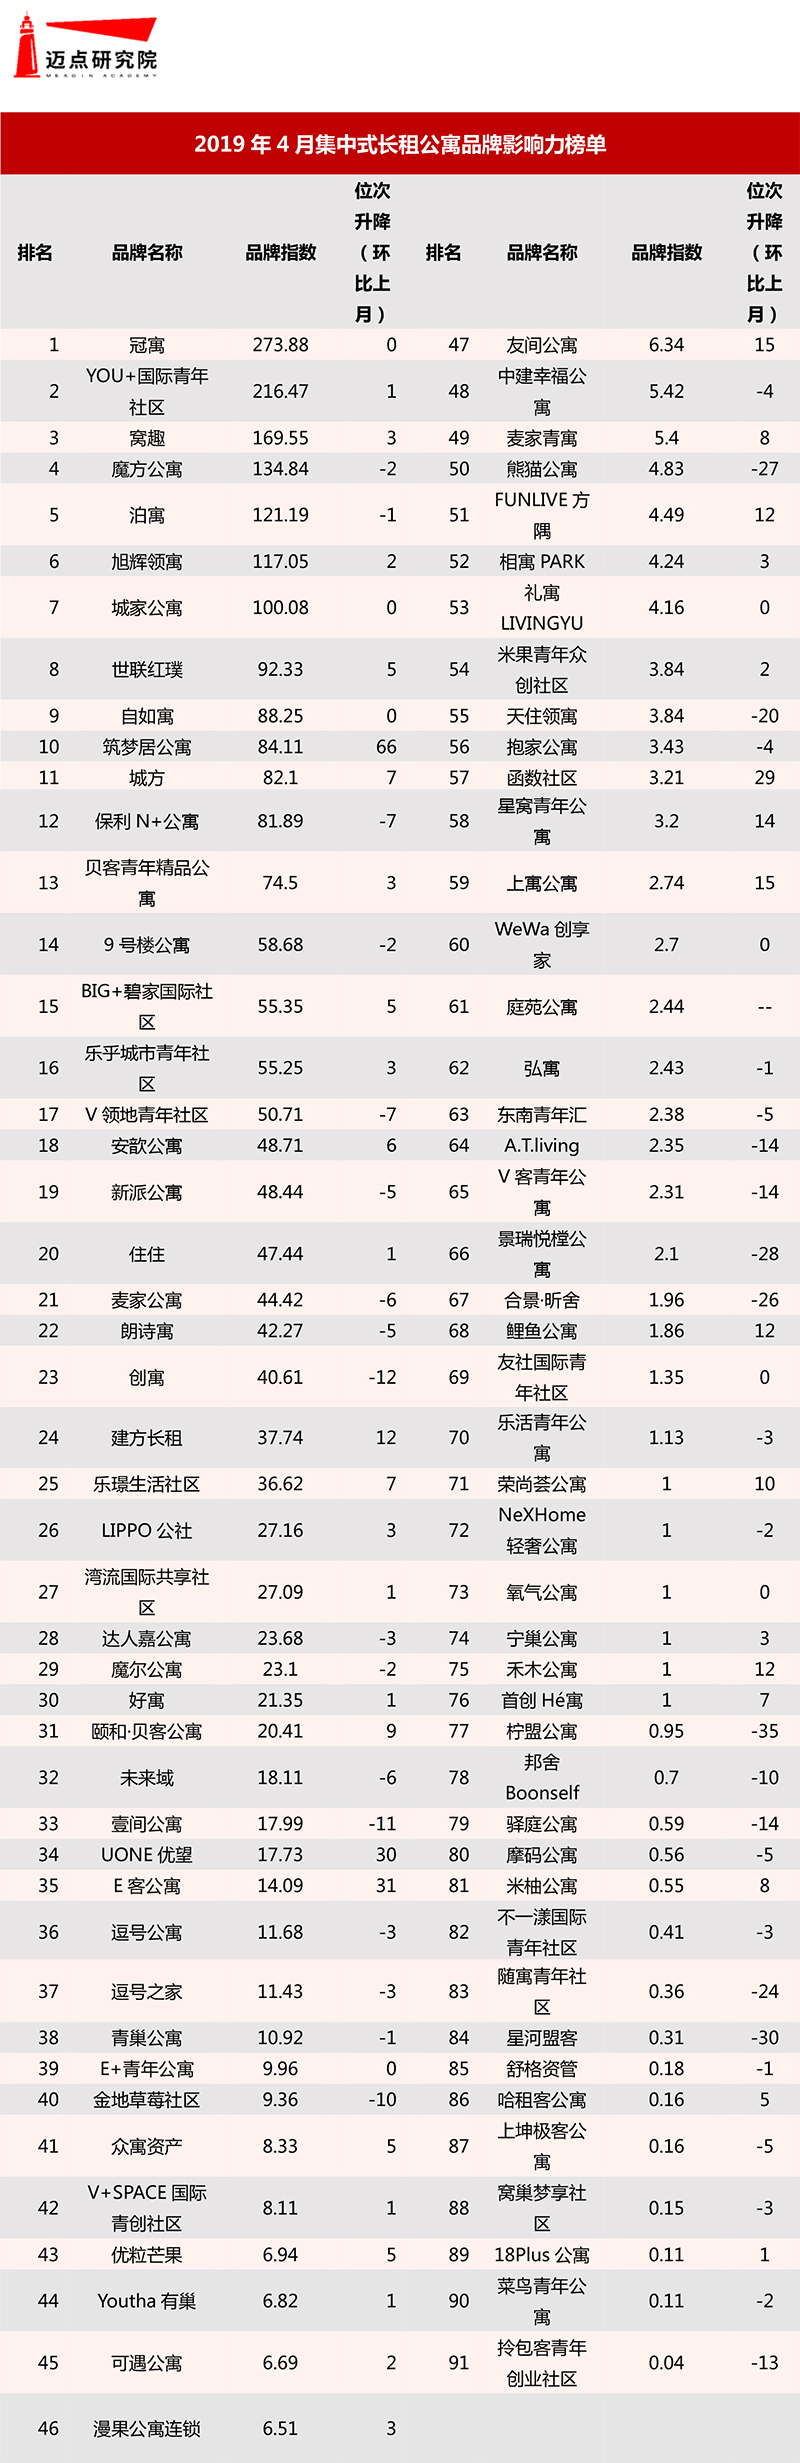 2019年4月集中式长租公寓品牌影响力榜单-1.jpg